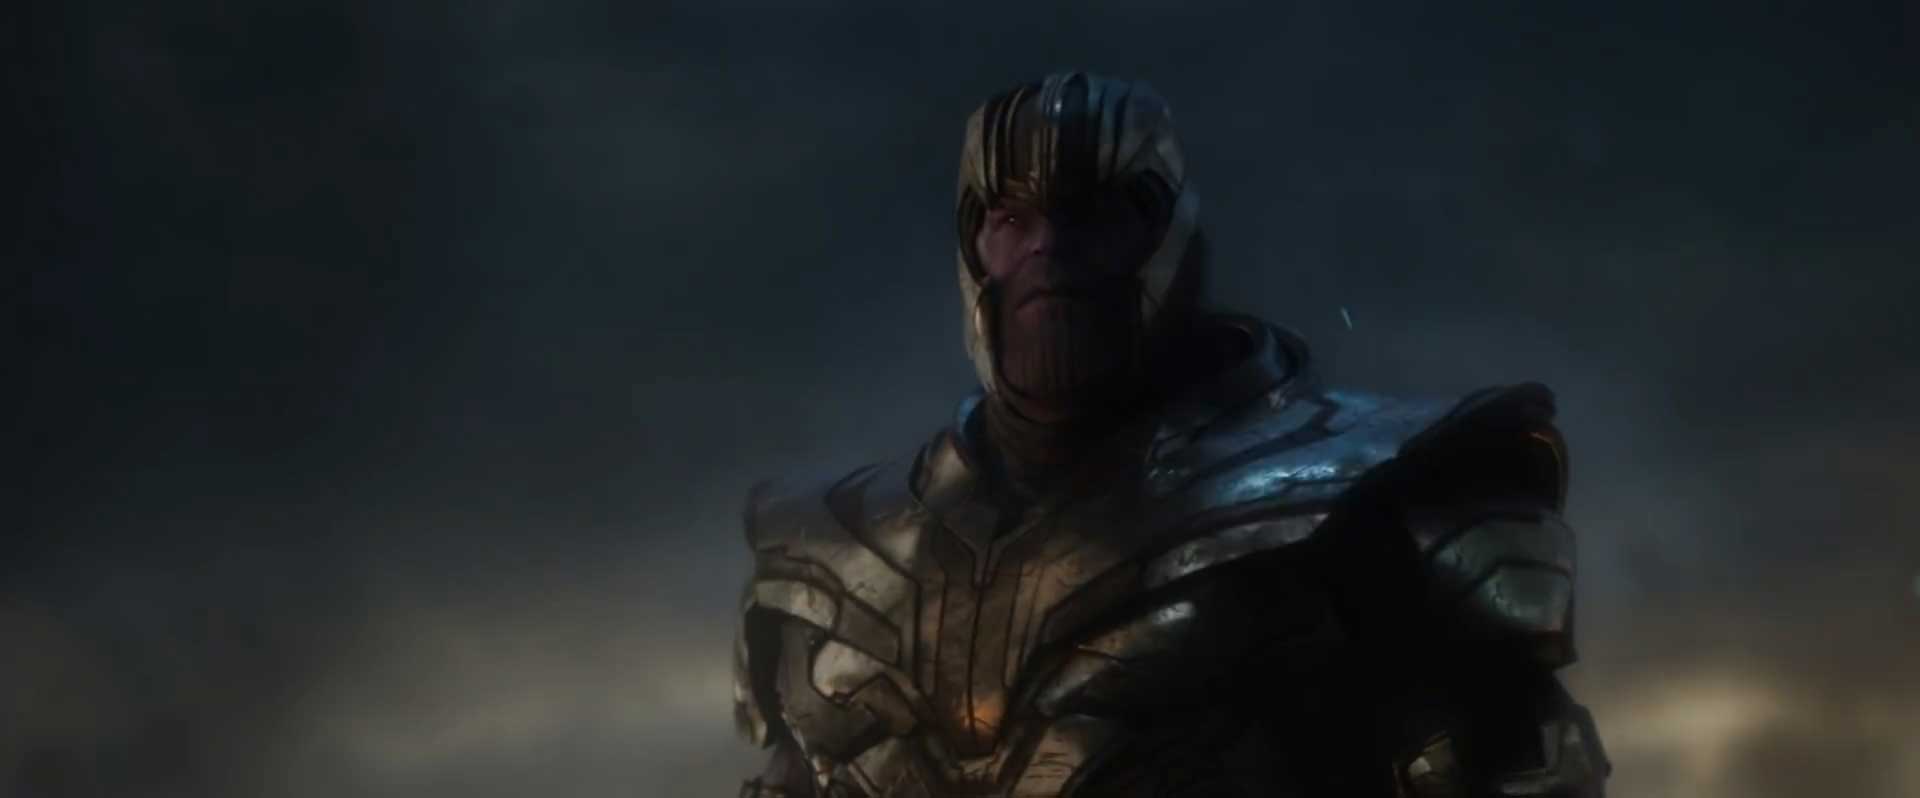 Avengers Endgame Special Look Trailer Breakdown - Thanos Battle Armor